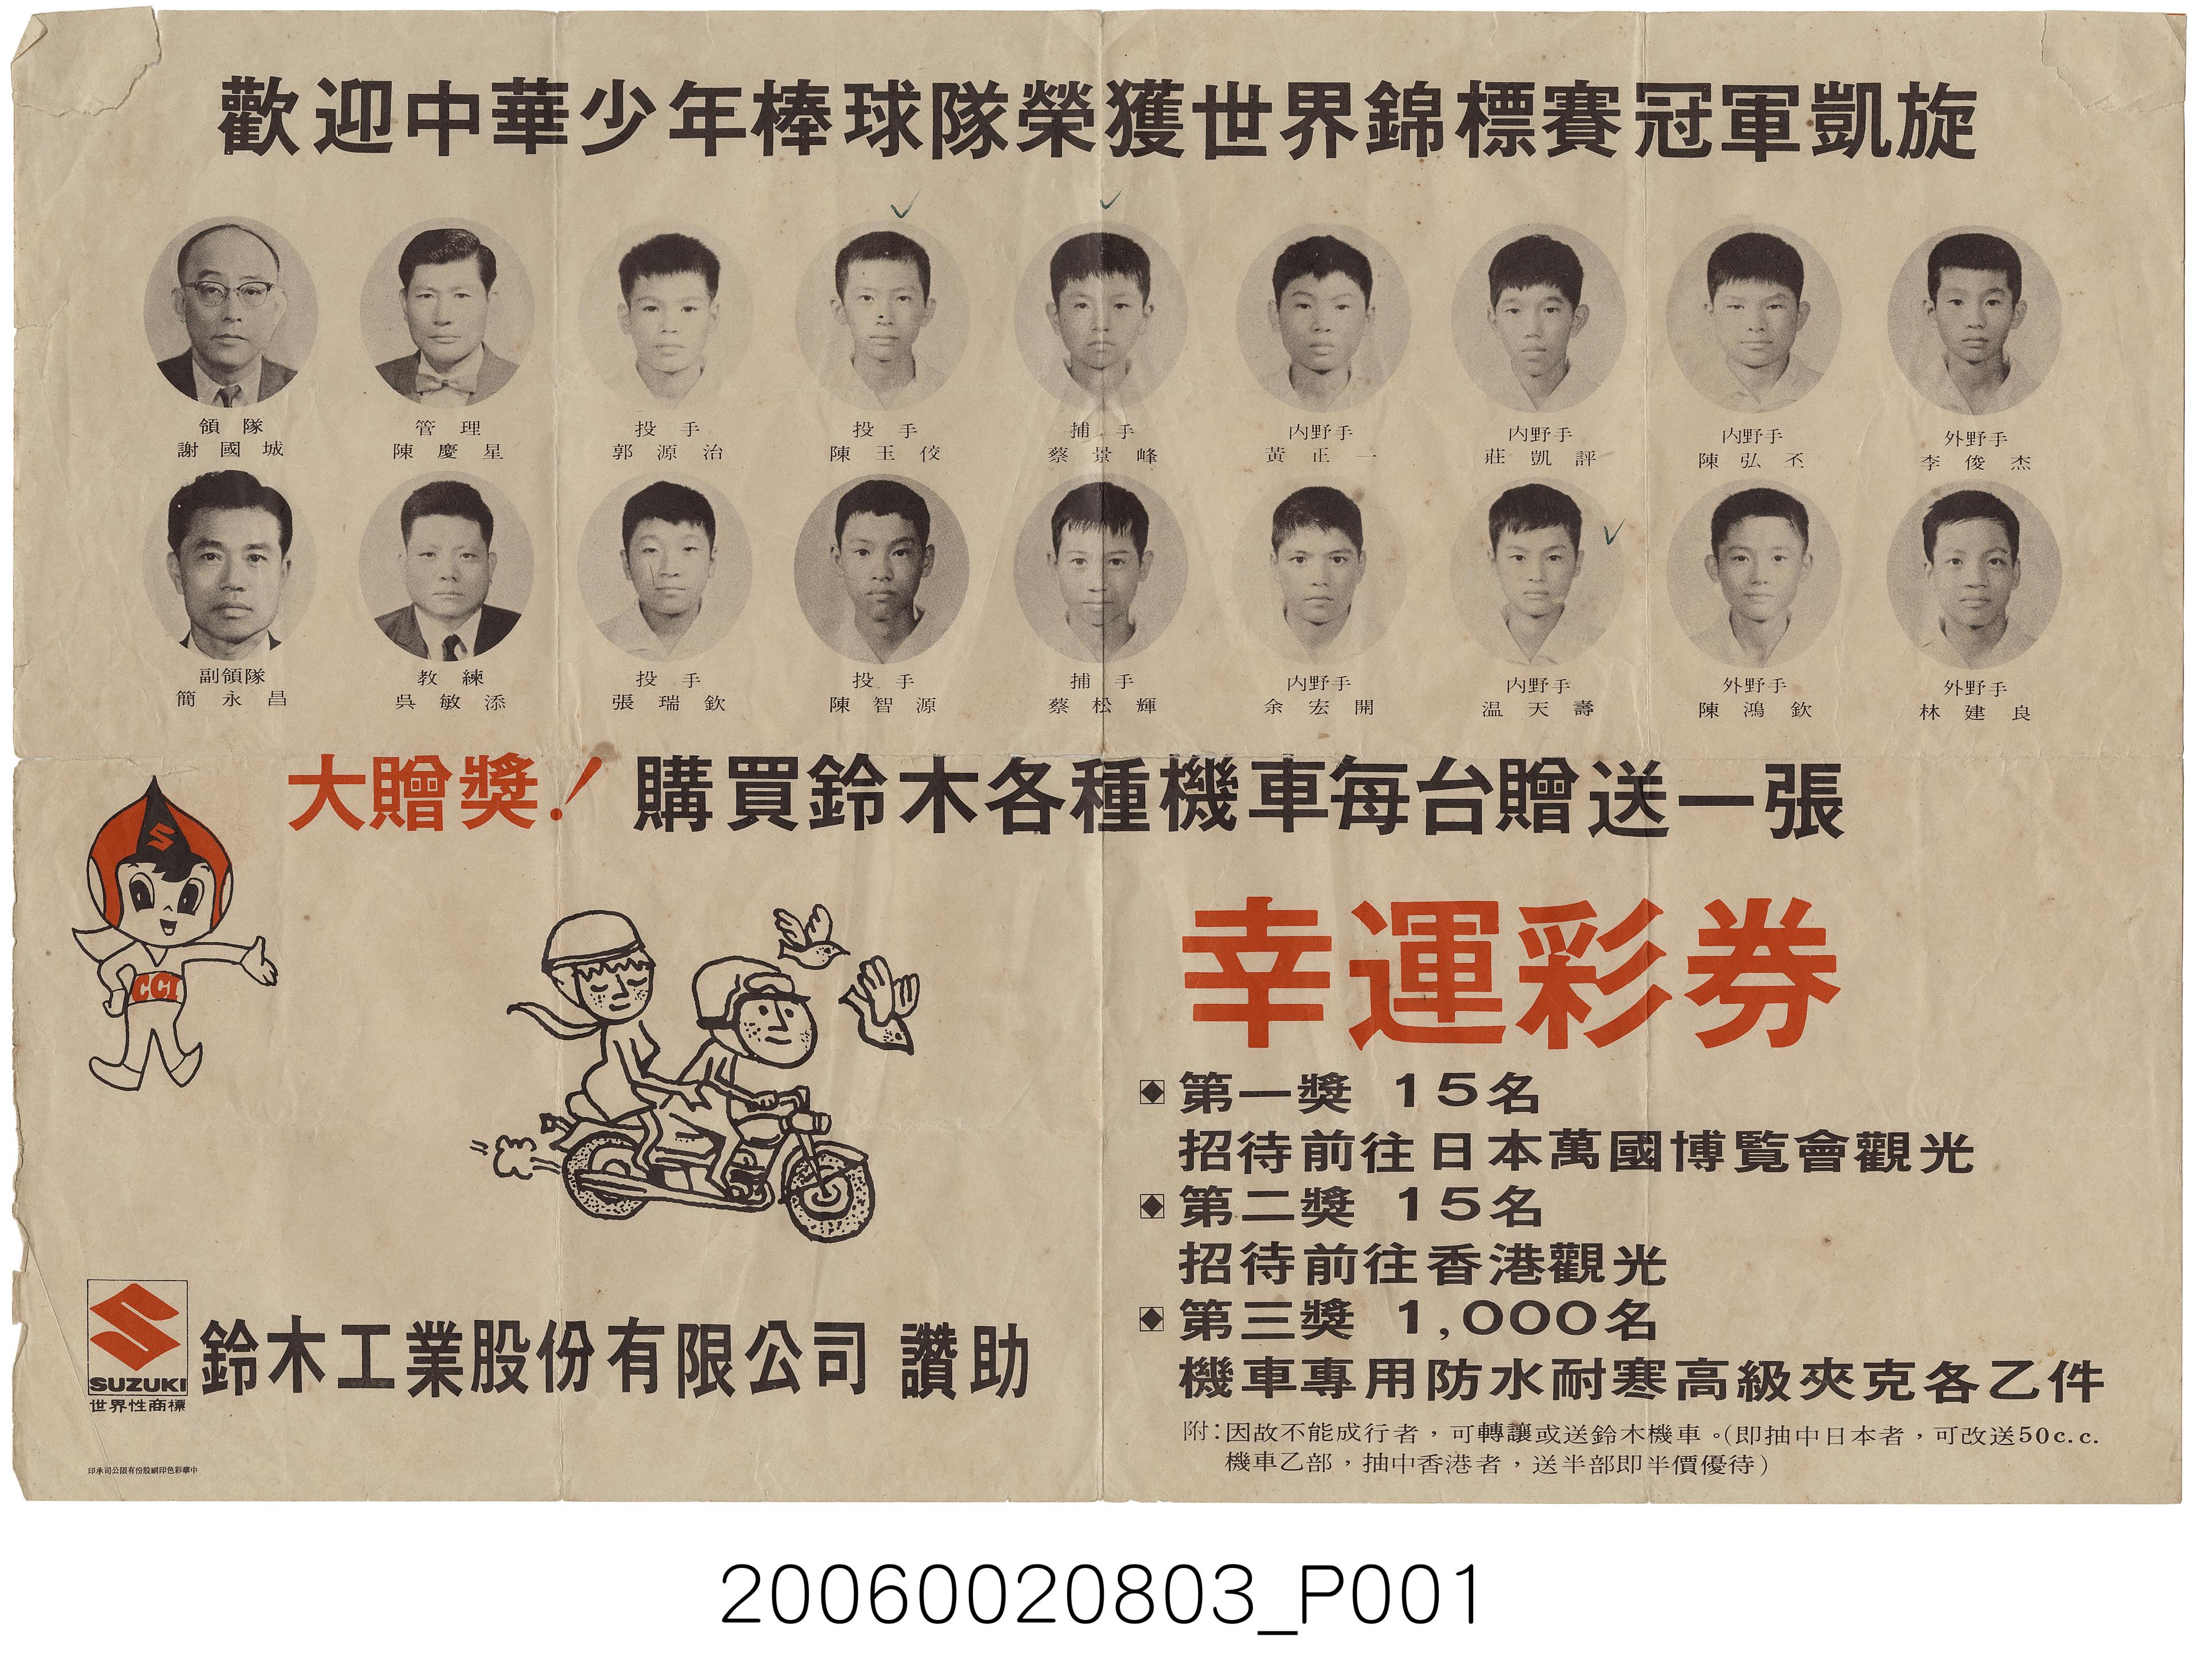 歡迎中華少年棒球隊榮獲世界錦標賽冠軍凱旋廣告單 (共1張)